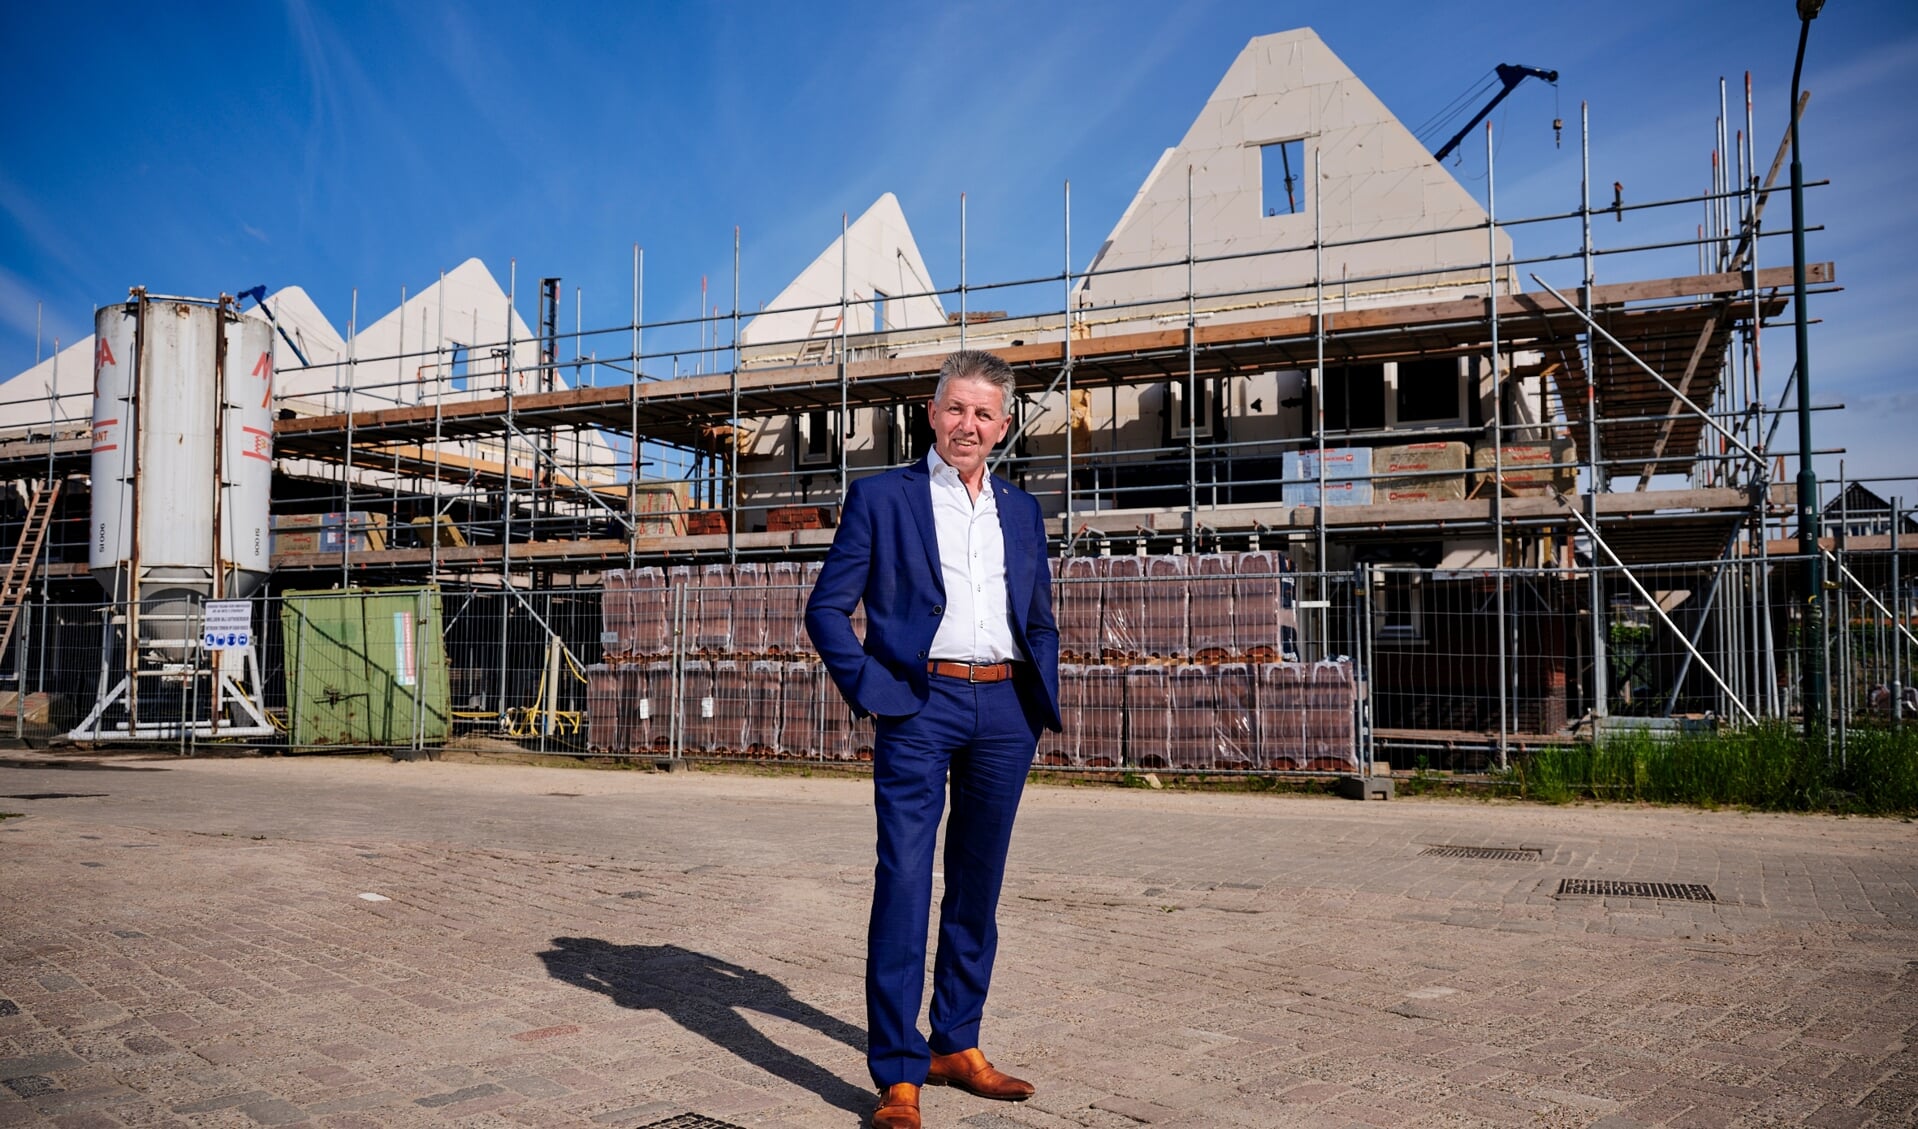 Wethouder Tonny Meulensteen had goed nieuws, Laarbeek mag de komende jaren 300 woningen extra gaan bouwen. 